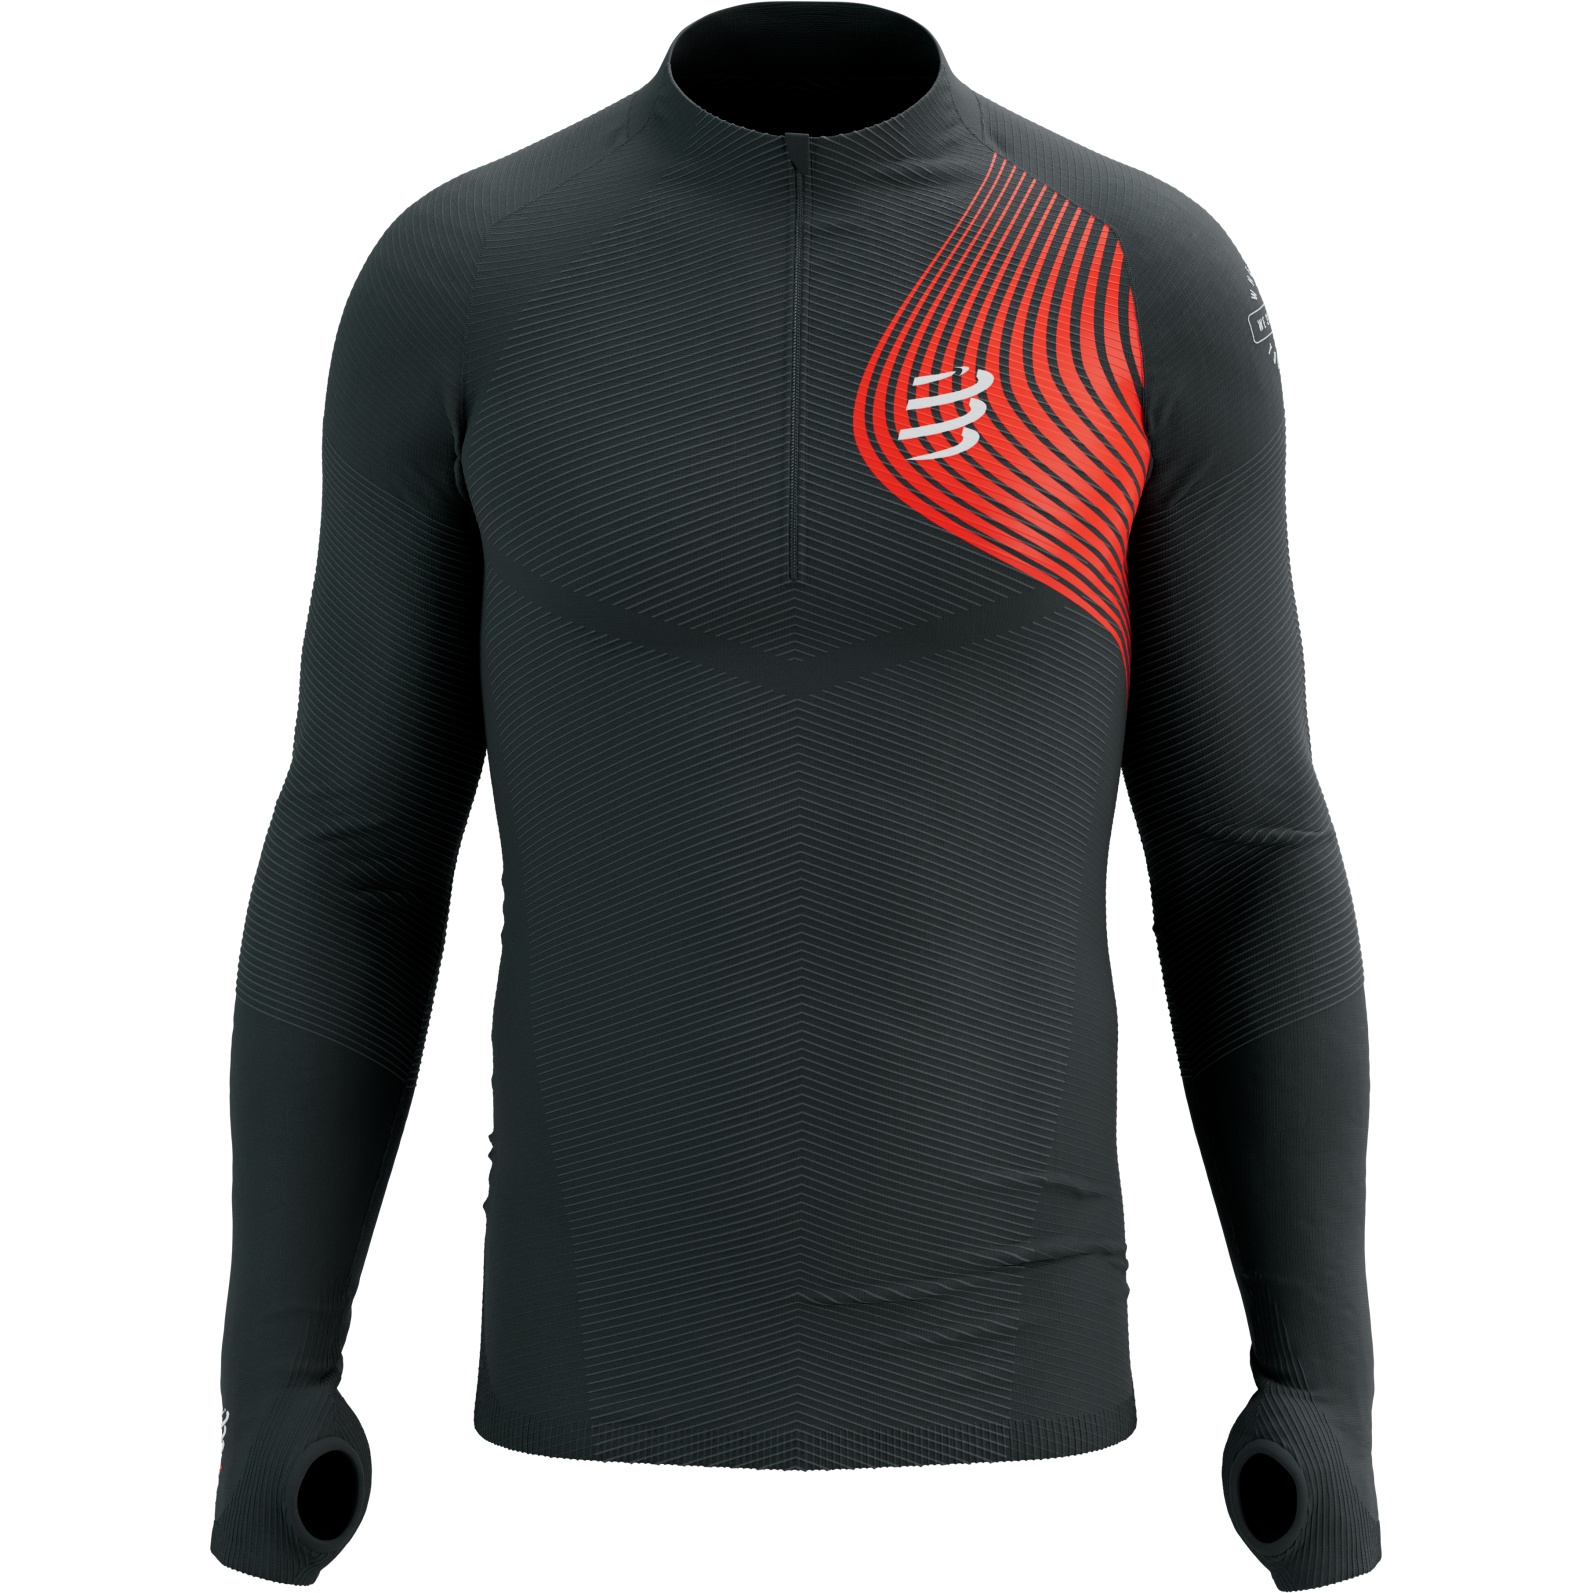 Produktbild von Compressport Winter Trail Postural Langarmshirt - schwarz/rot